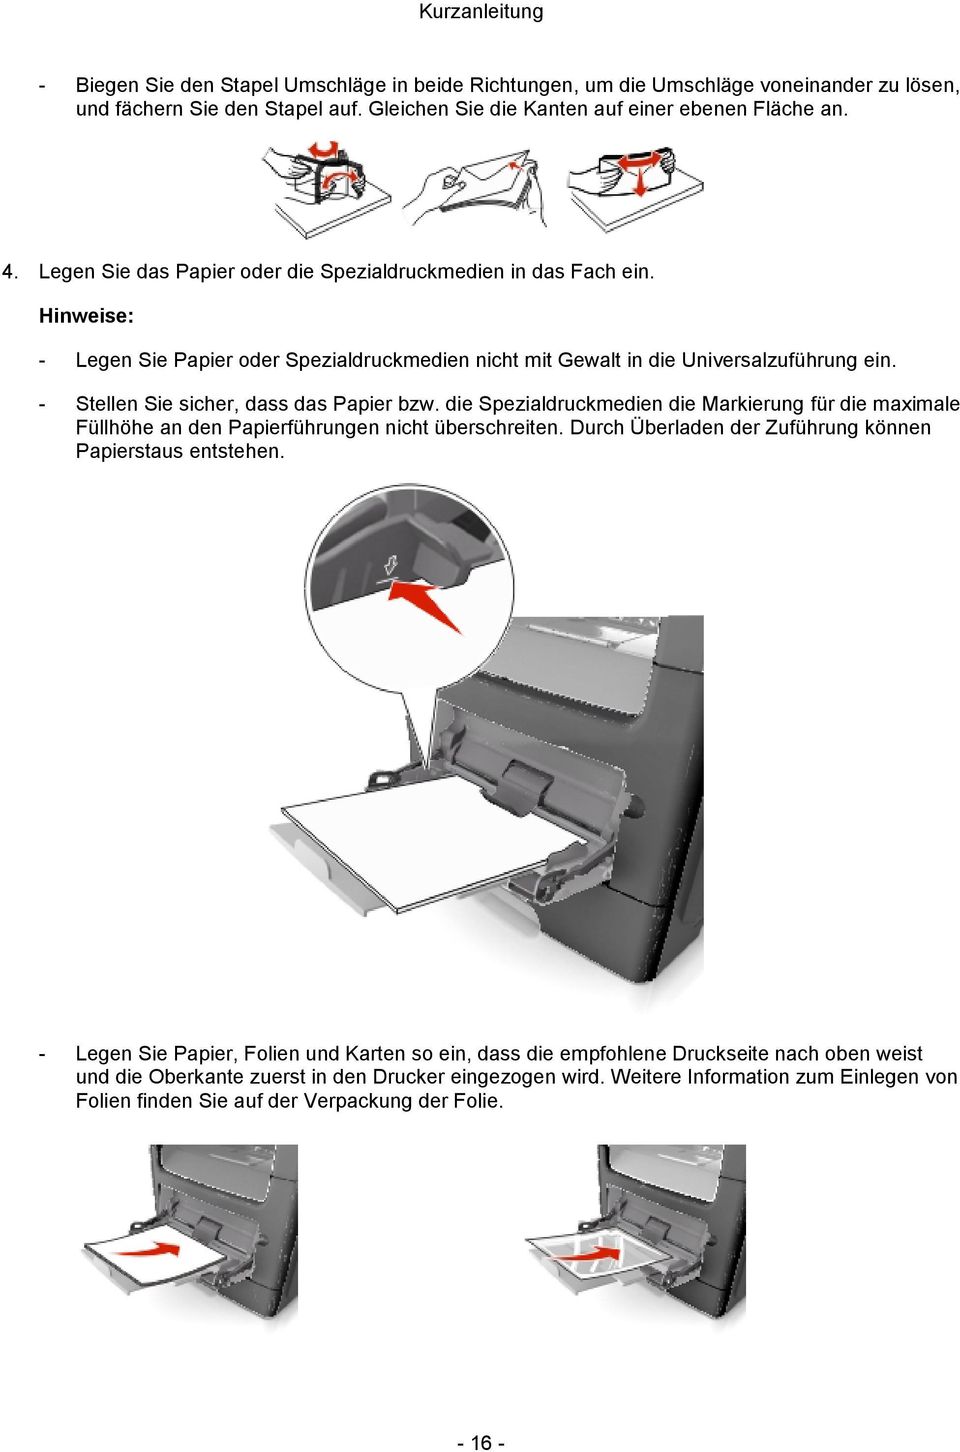 - Stellen Sie sicher, dass das Papier bzw. die Spezialdruckmedien die Markierung für die maximale Füllhöhe an den Papierführungen nicht überschreiten.